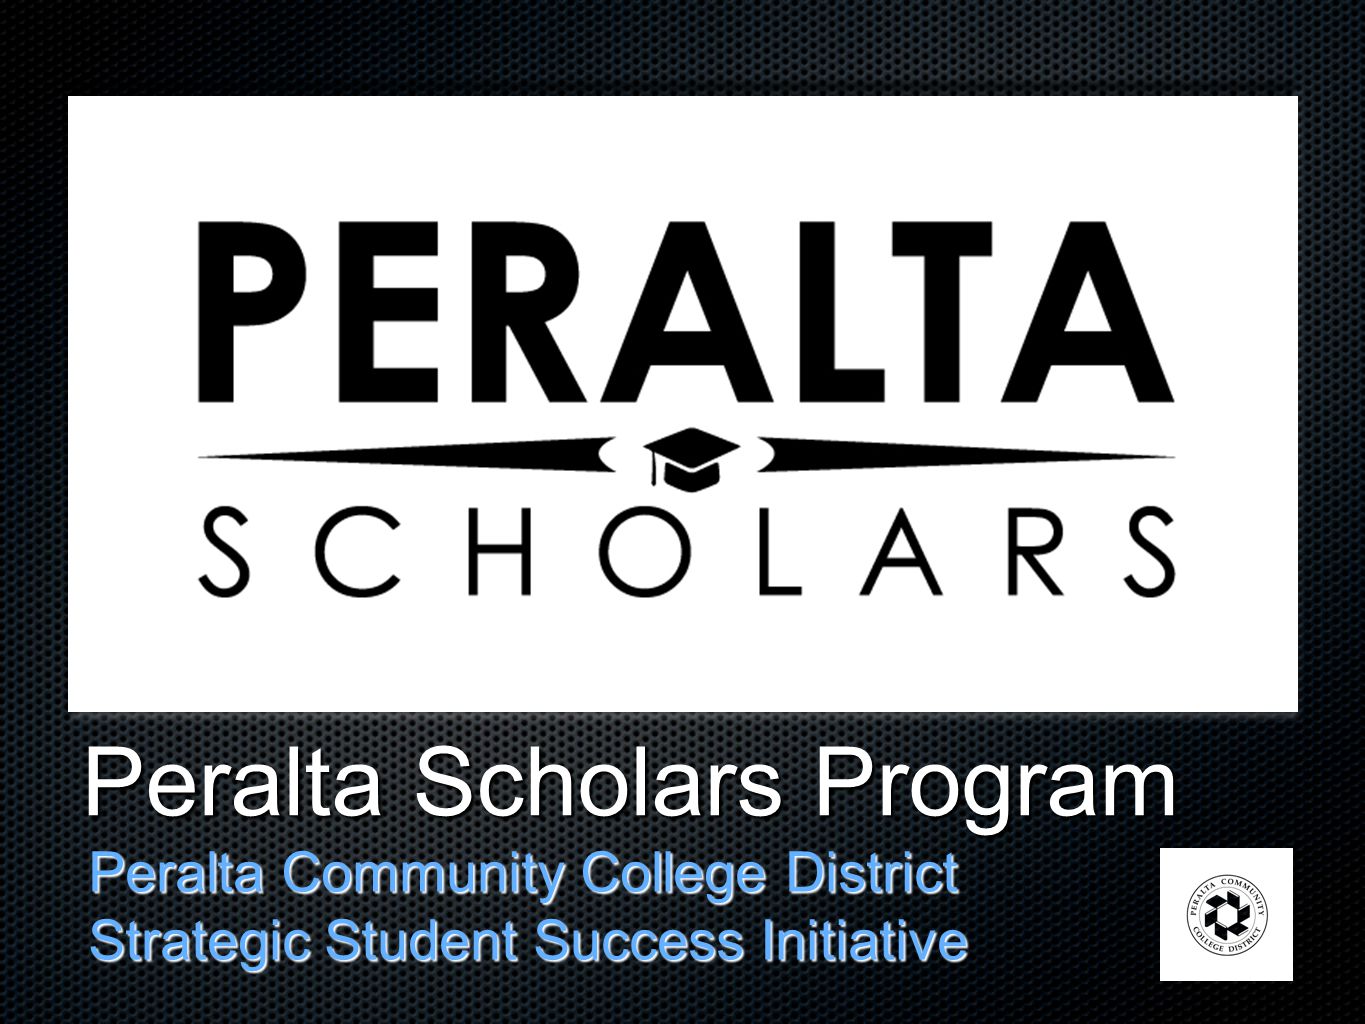 Peralta Scholars Program Peralta Community College District Strategic Student Success Initiative